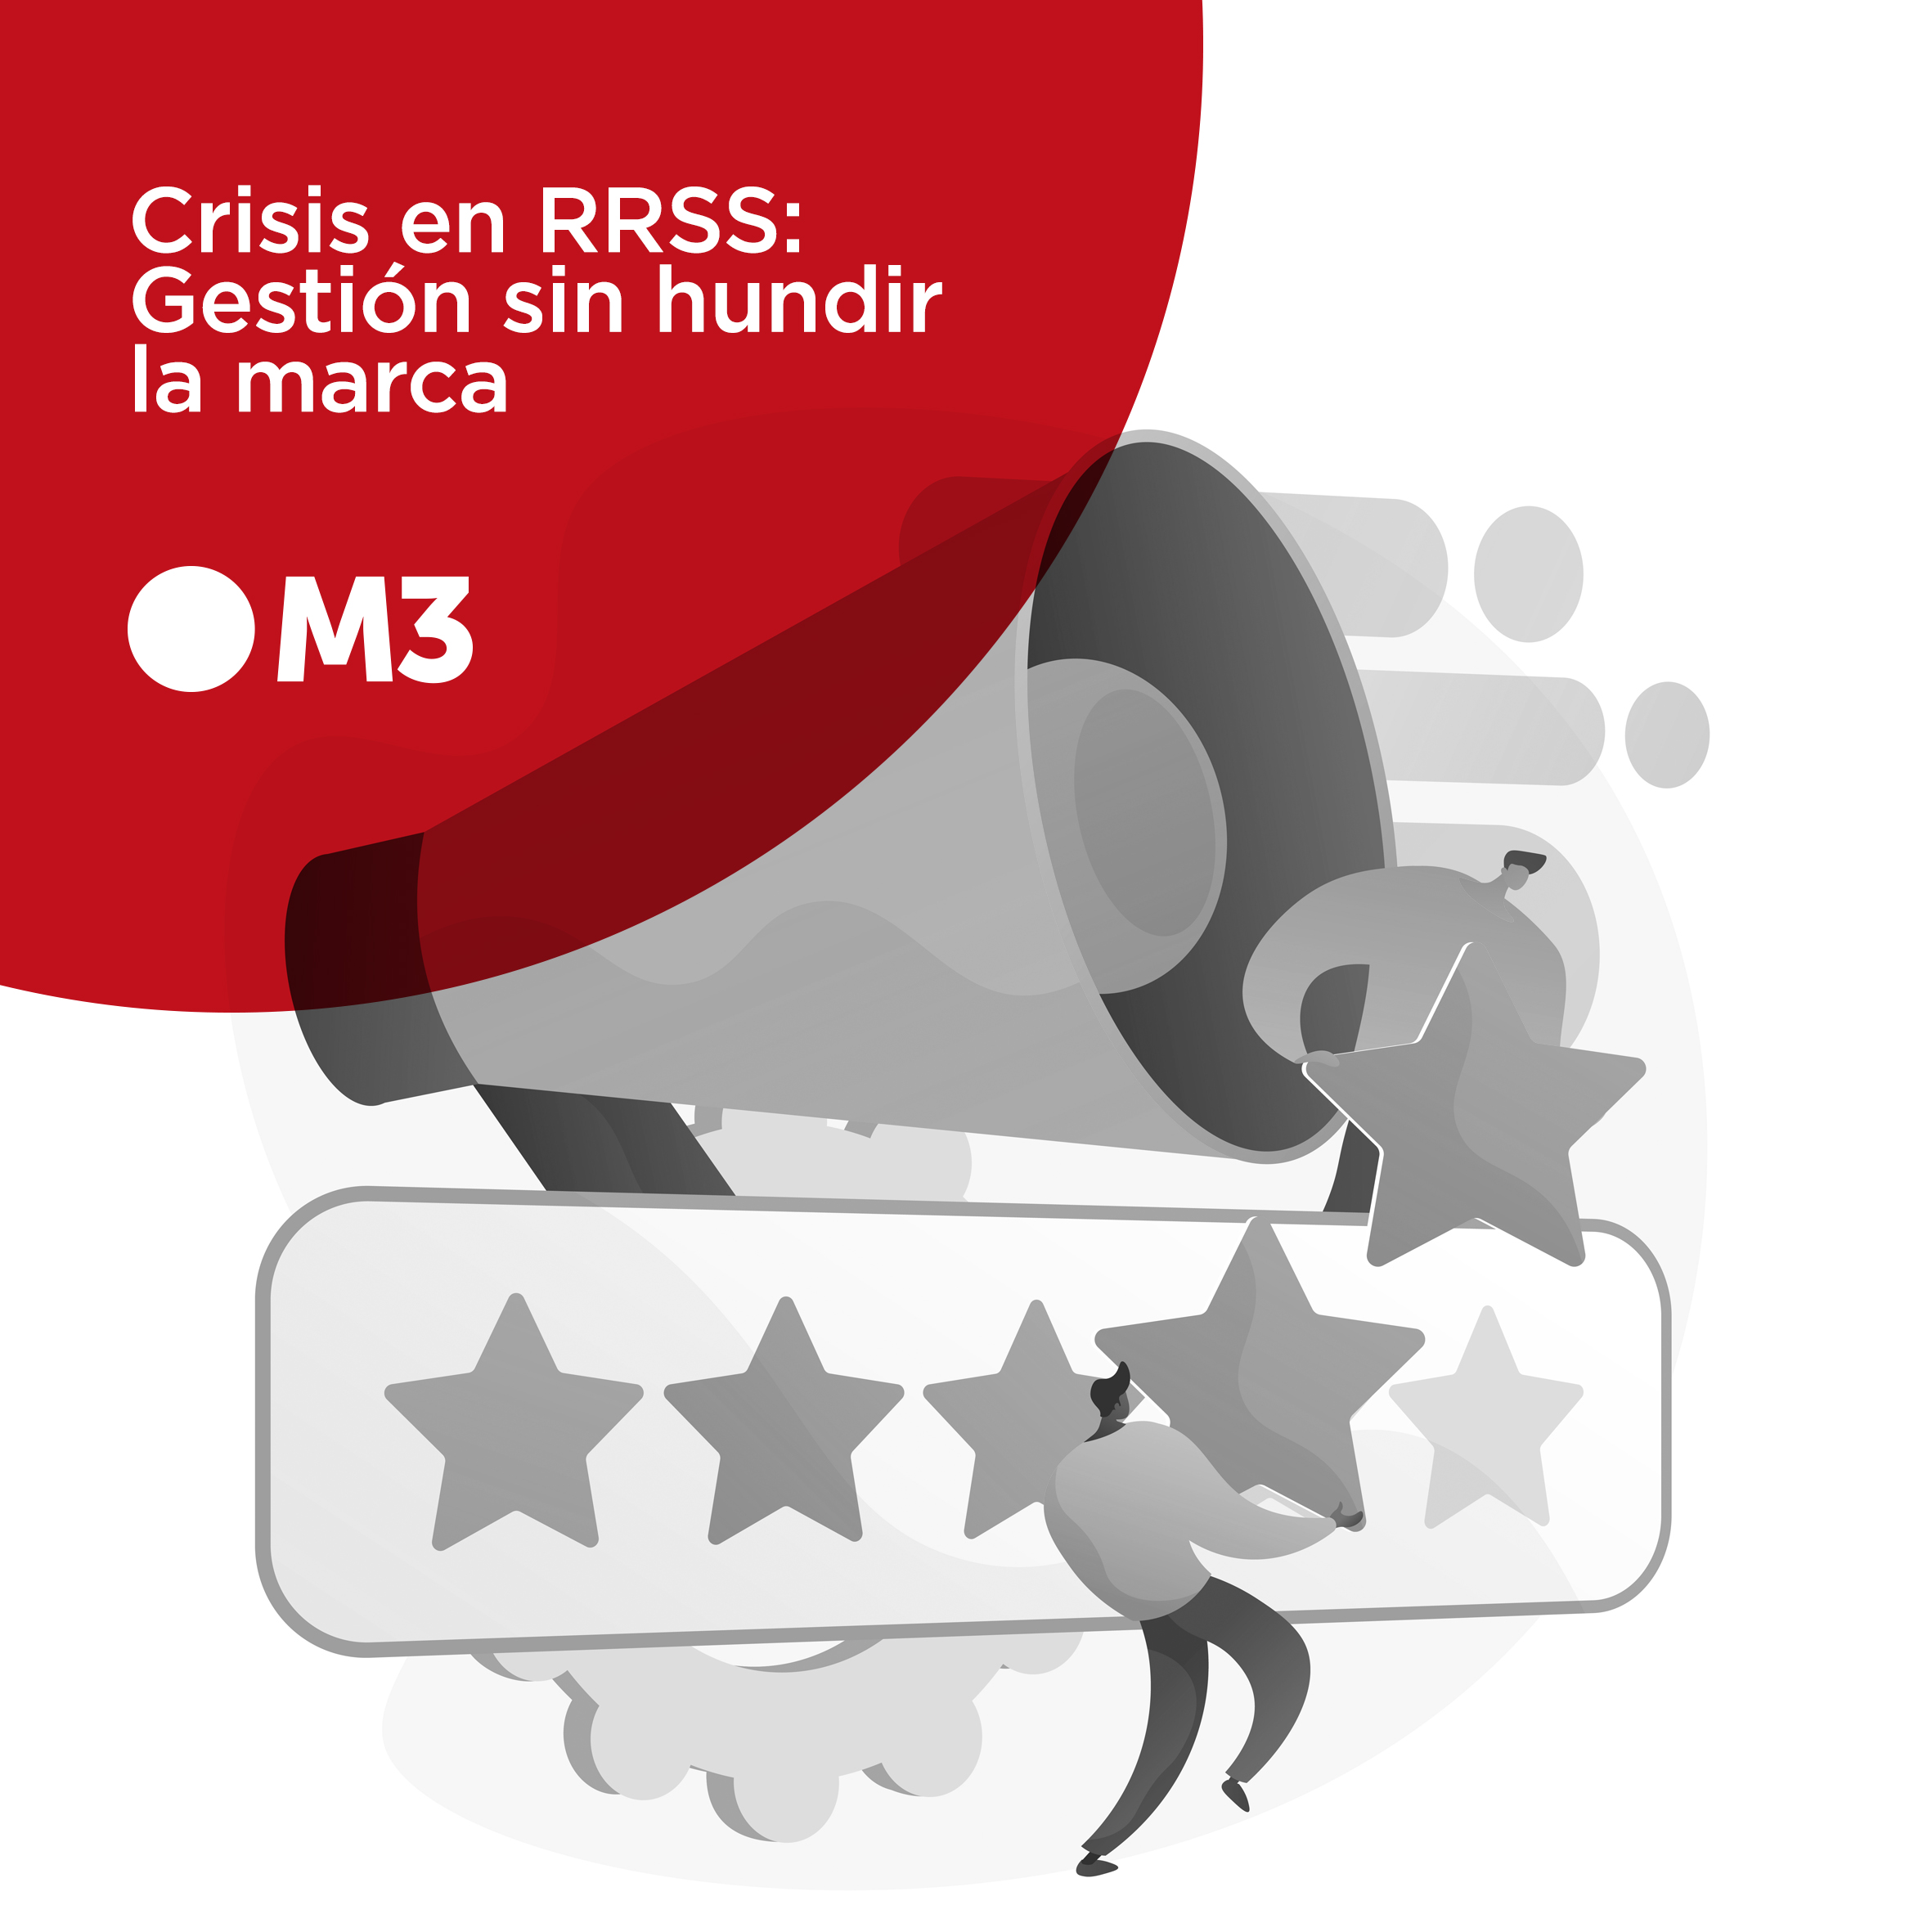 Crisis en RRSS: Gestión sin hundir la marca